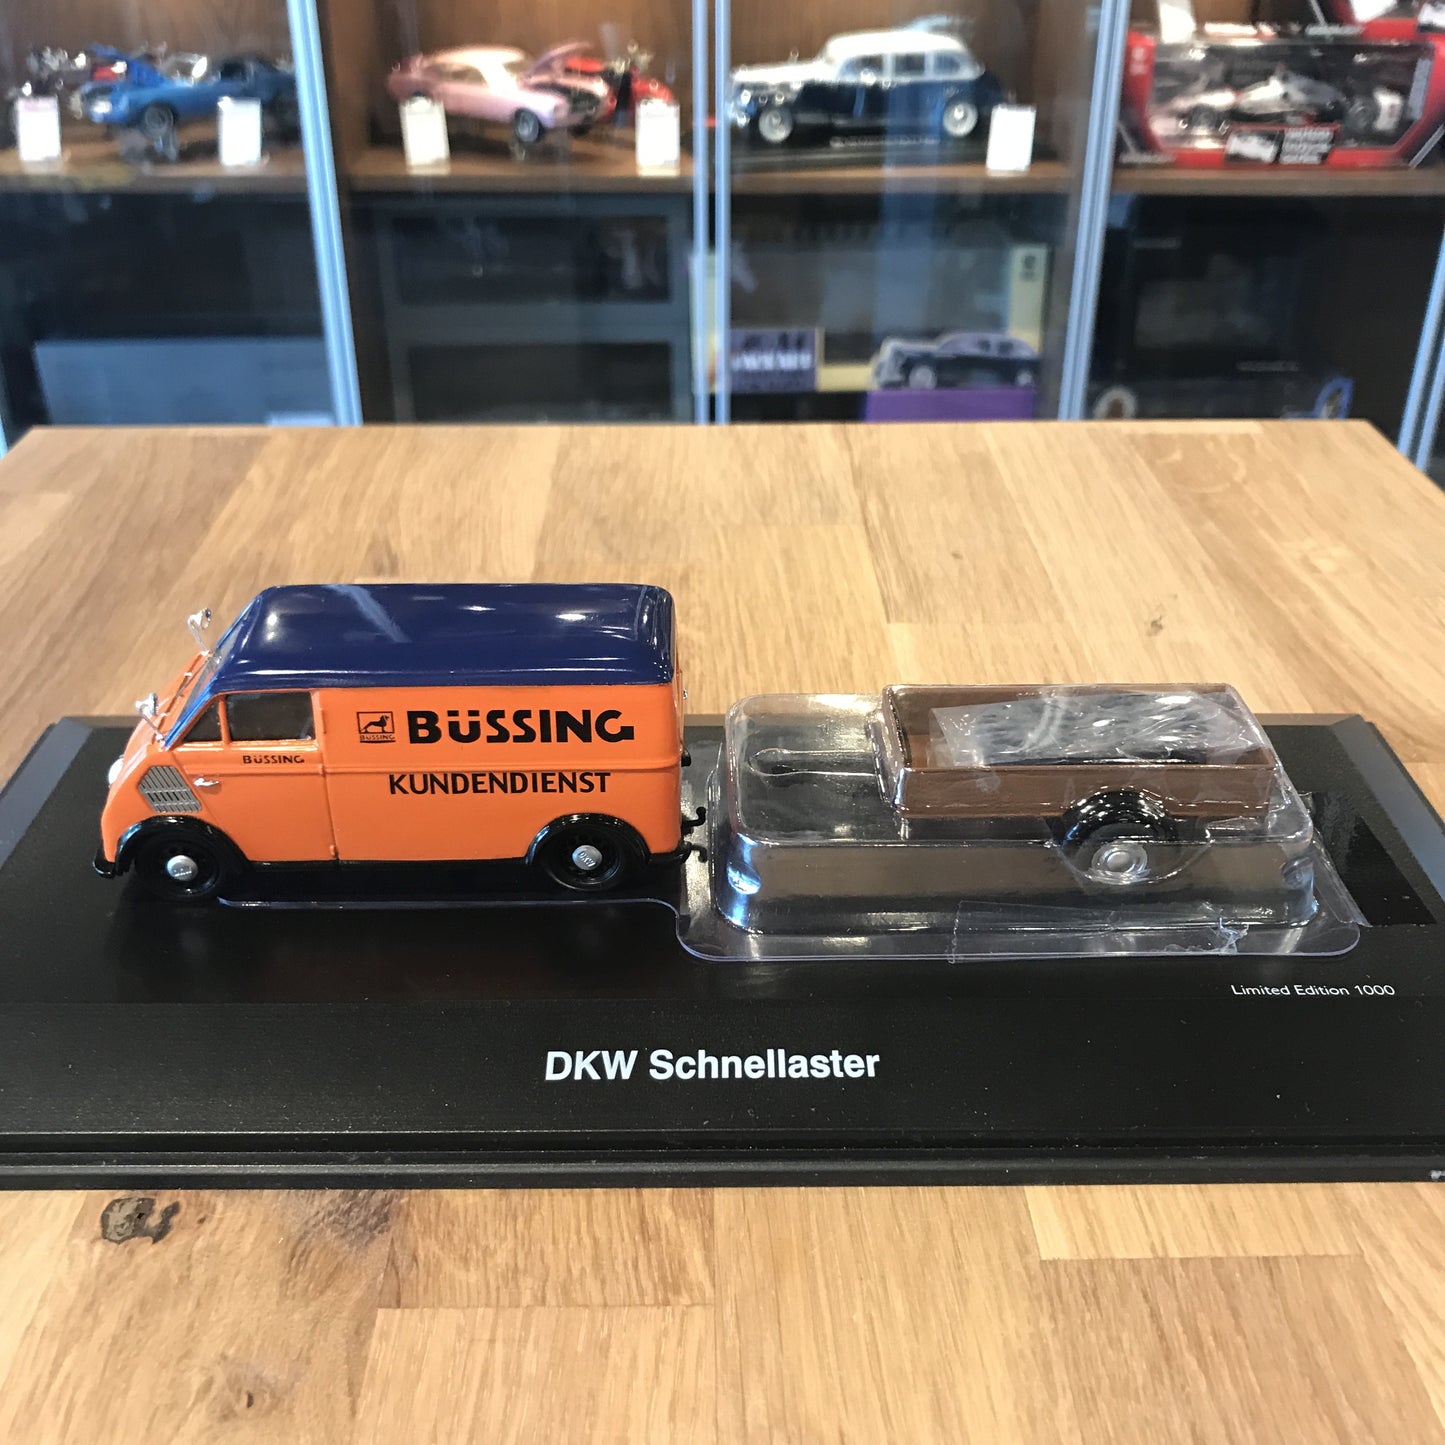 Schuco 1:43 DKW Schnelllaster Bussing With Trailer 450238900